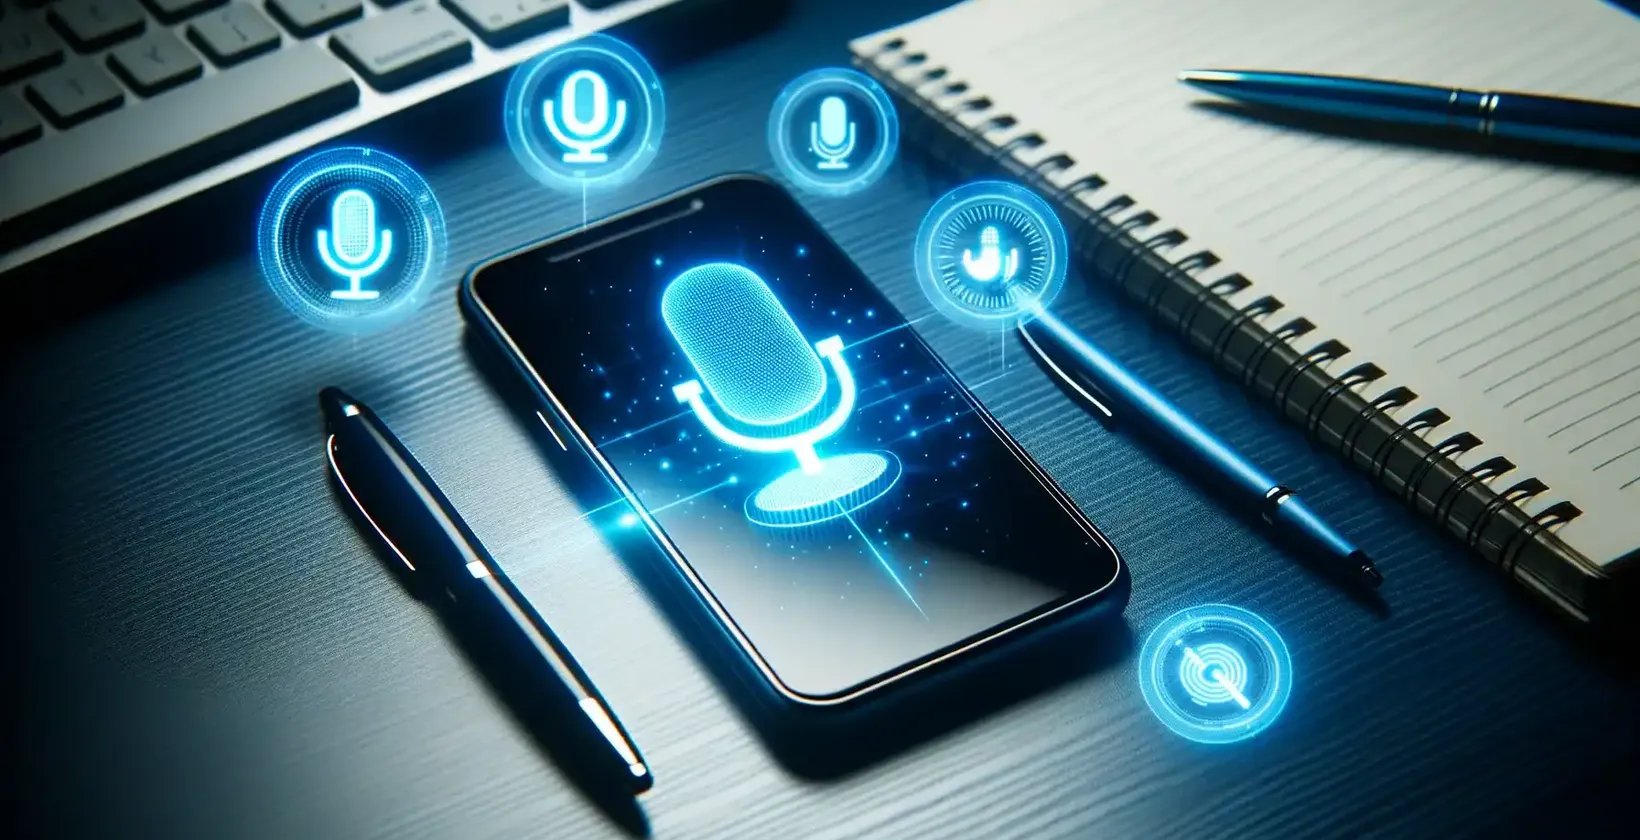 Legg til tekst i video på Samsung-enheter, illustrert med en Samsung-smarttelefon som viser talekommandosymboler på et skrivebord.